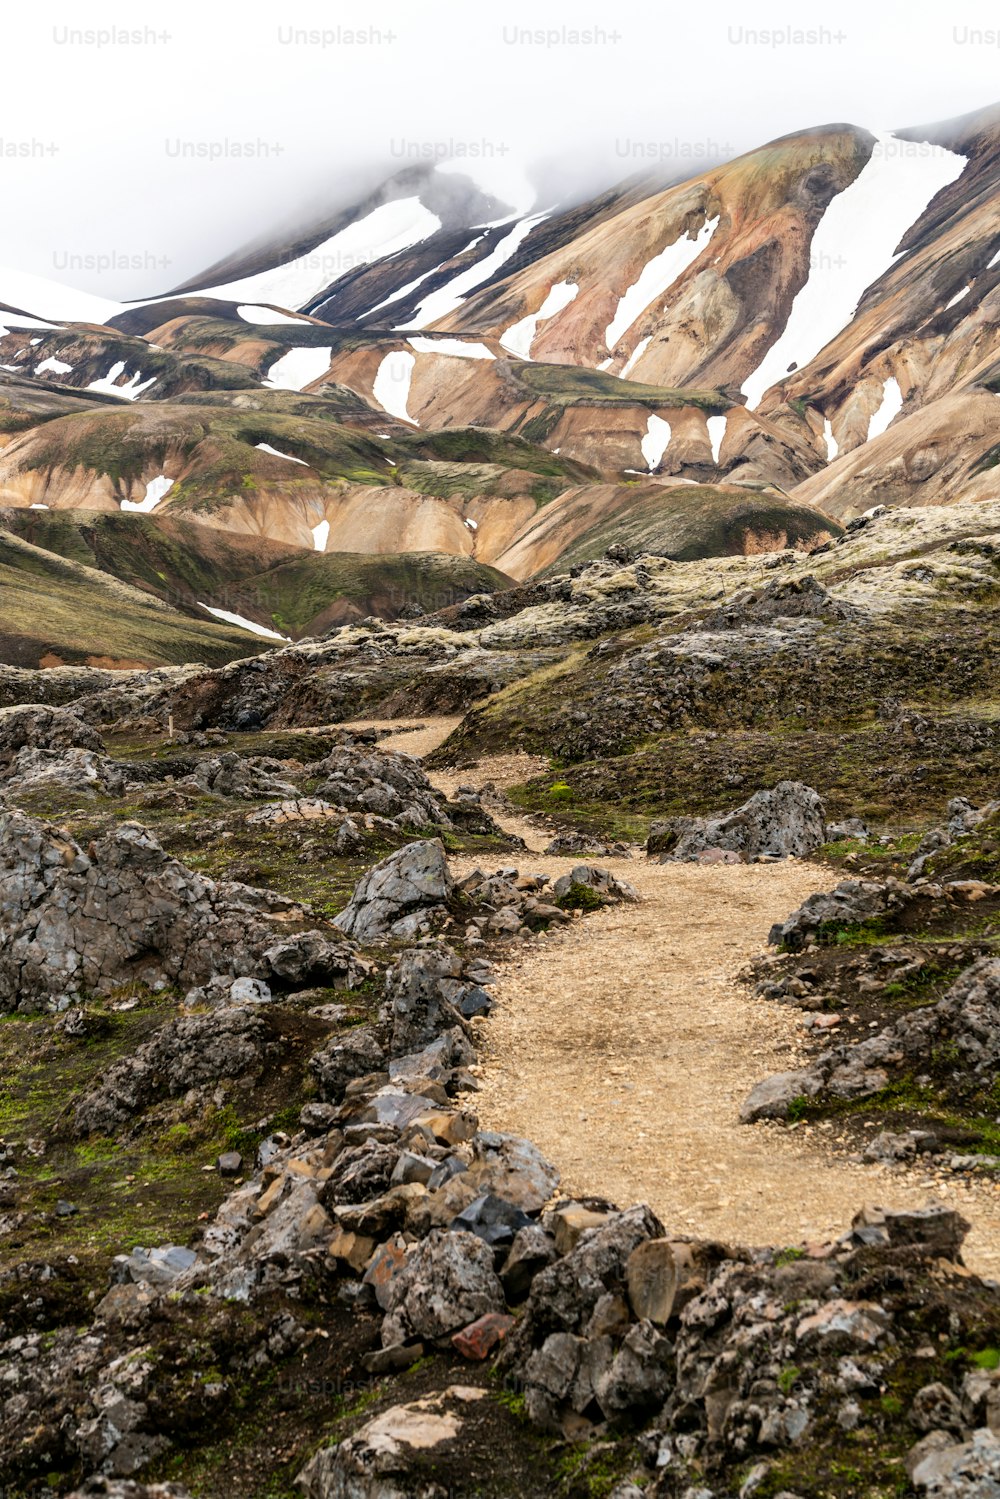 Paisaje de Landmannalaugar paisaje de naturaleza surrealista en las tierras altas de Islandia, Nórdico, Europa. Hermoso y colorido terreno montañoso nevado famoso por la aventura de trekking de verano y las caminatas al aire libre.